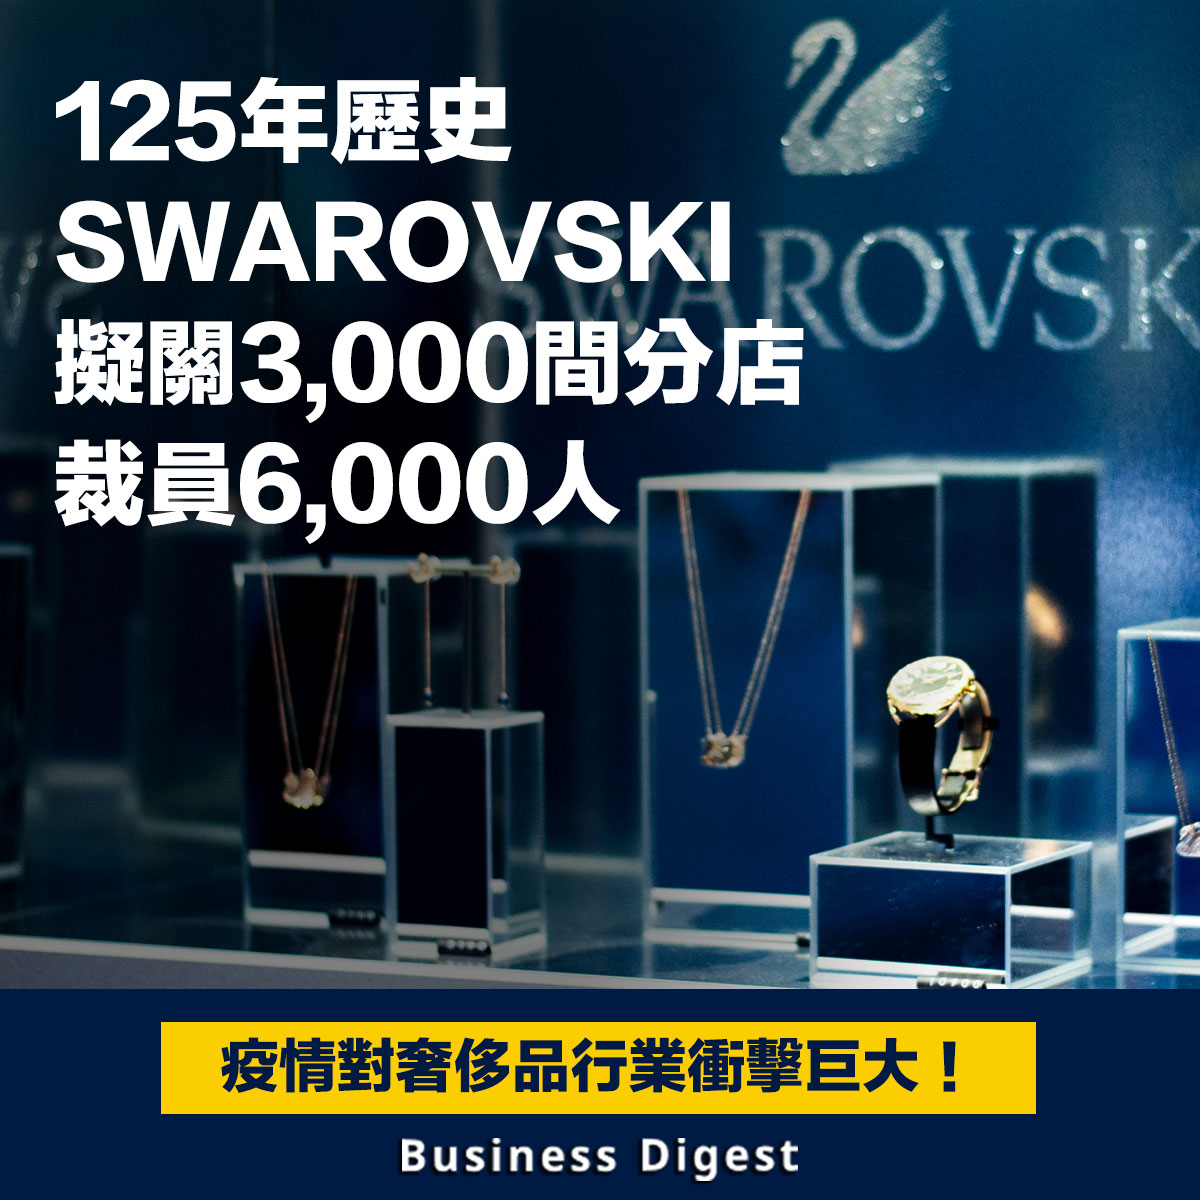 【商業熱話】125年歷史SWAROVSKI擬關3,000間分店，裁員6,000人